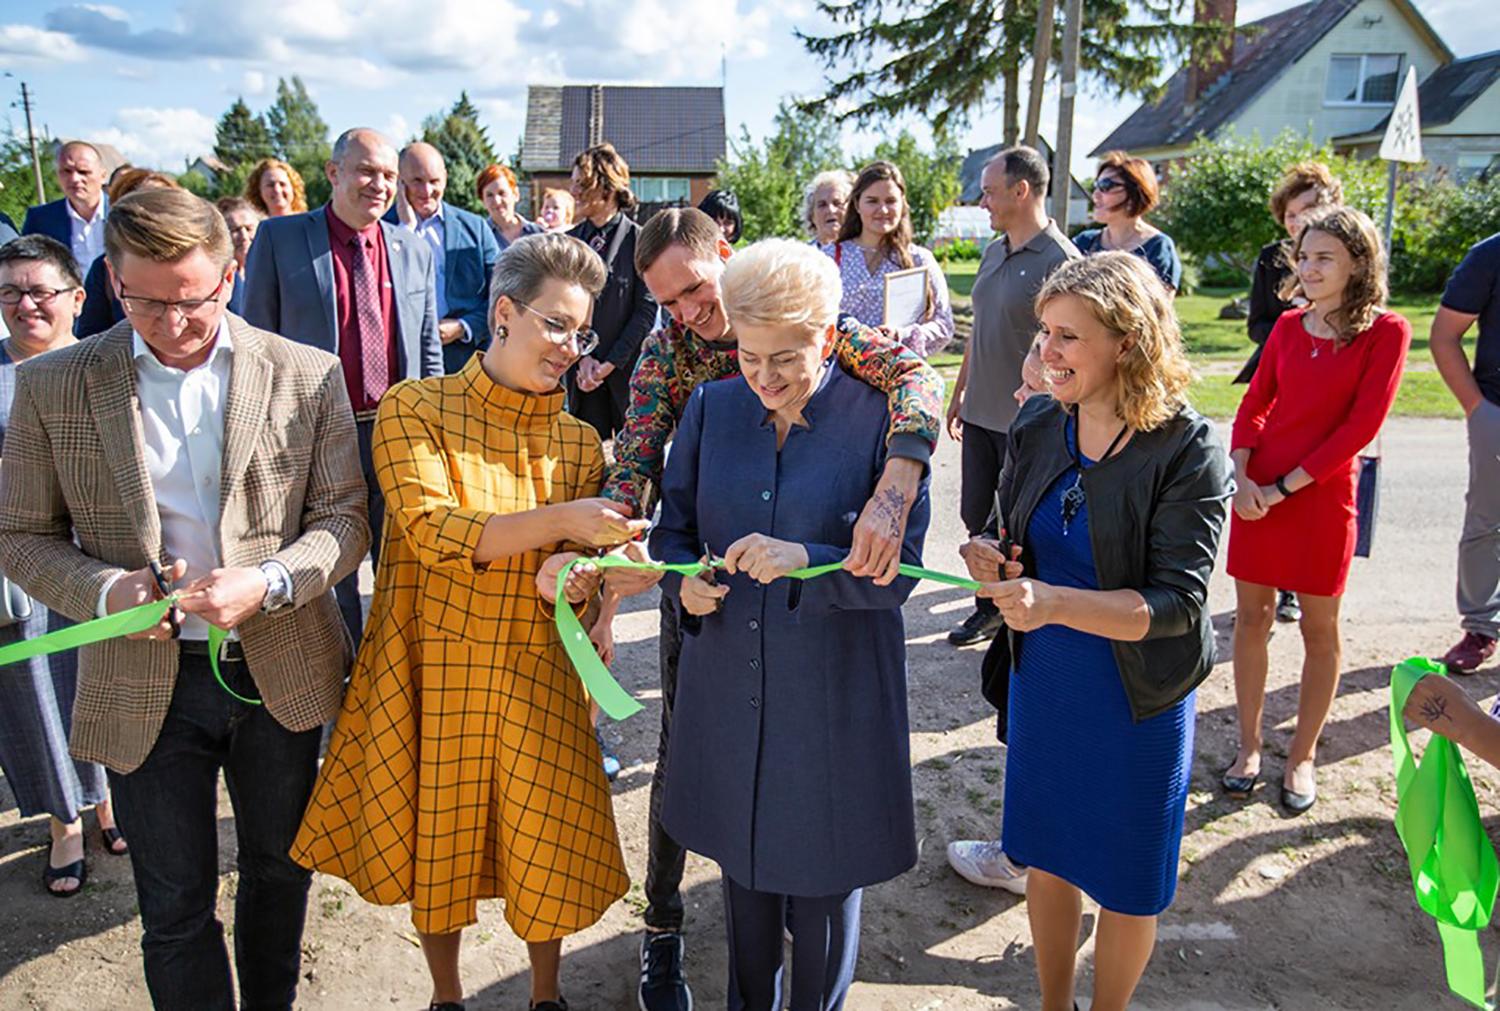 Užimtumo namus Tulpiakiemyje atidarė D. Grybauskaitė / Prezidentės biuro nuotr. Šventėje apsilankė ir kadenciją baigusi prezidentė Dalia Grybauskaitė.